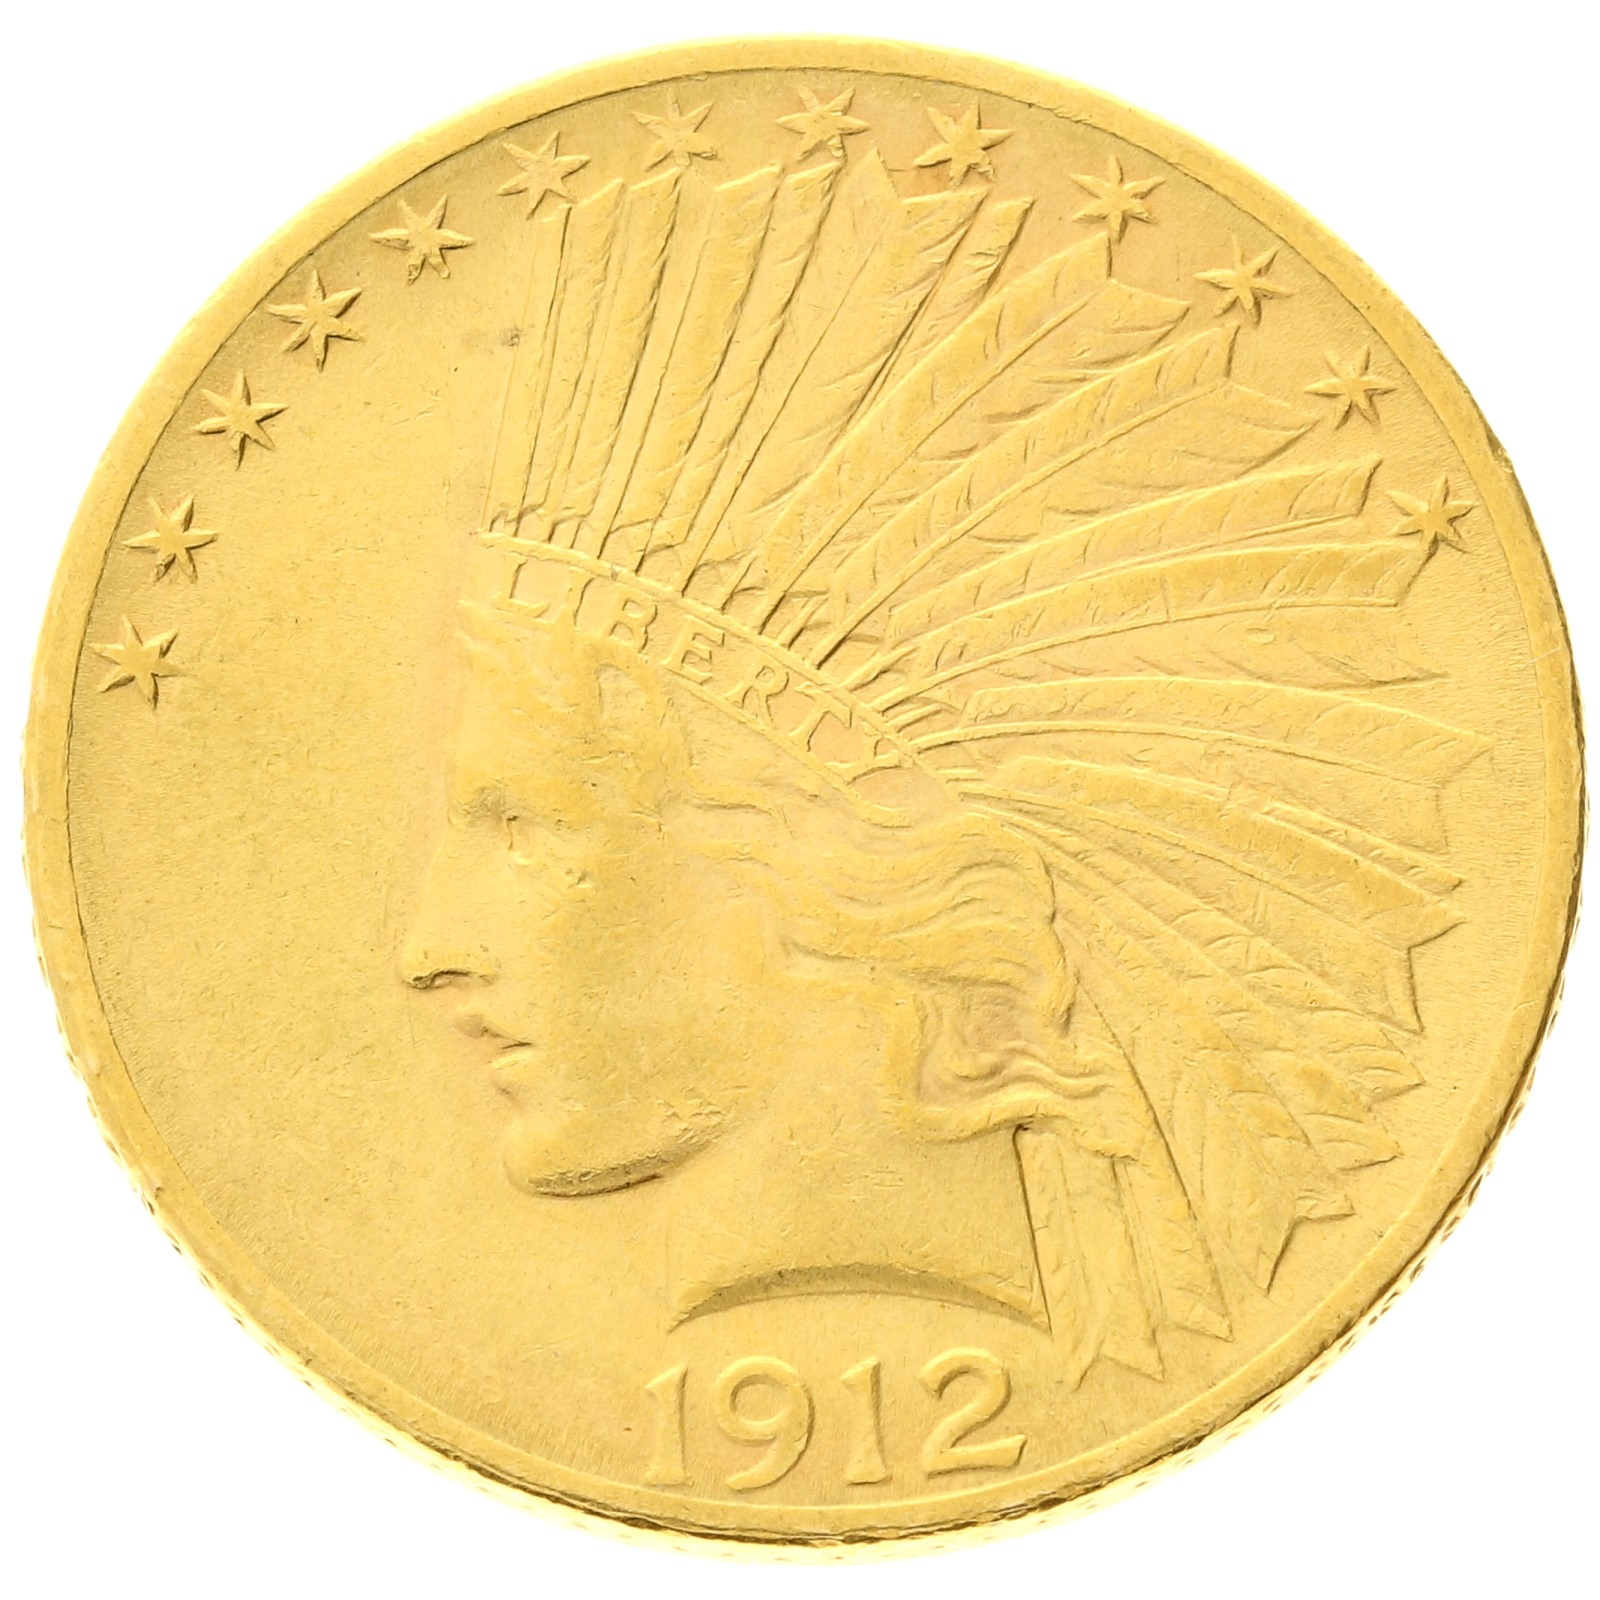 USA - 10 dollars - 1912 - Indian Head